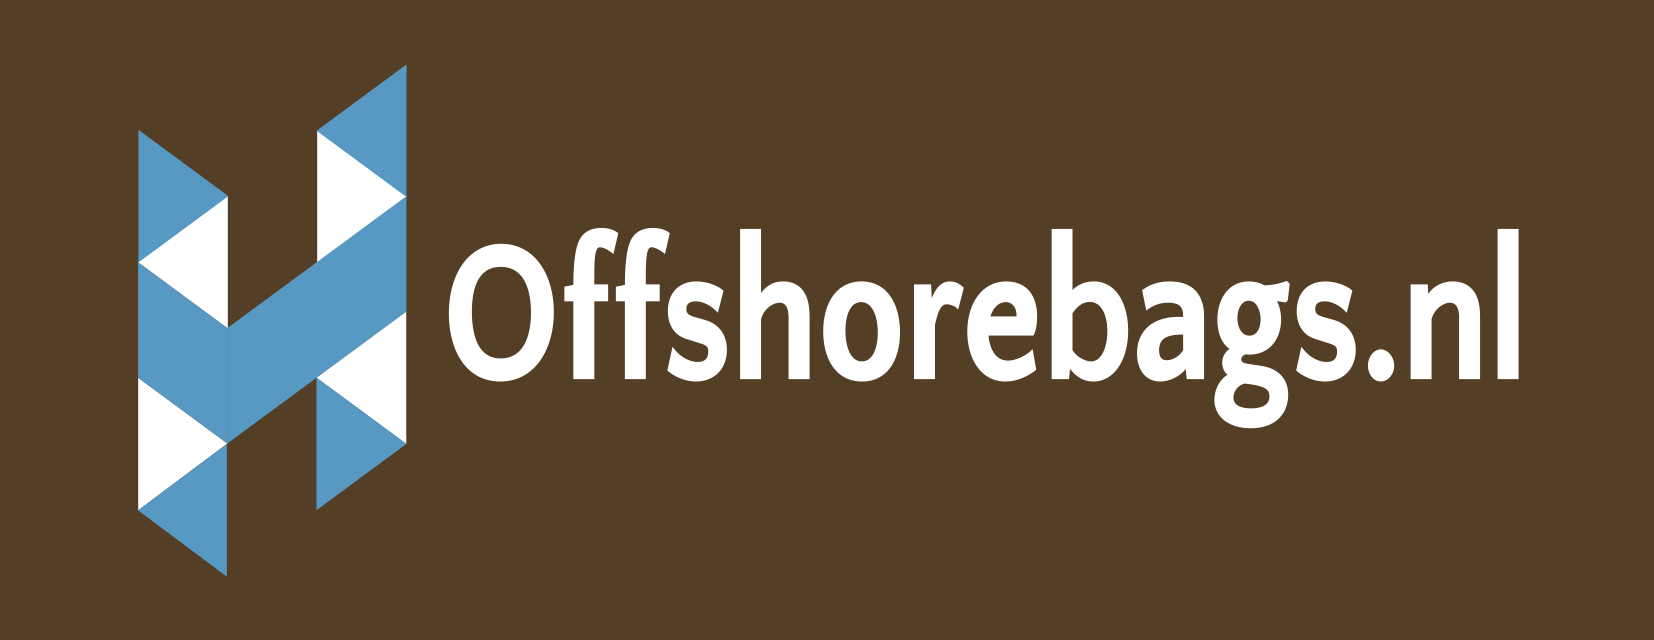 Offshorebags.nl: op zoek naar offshore bags? Bij ons bent u aan het juiste adres!